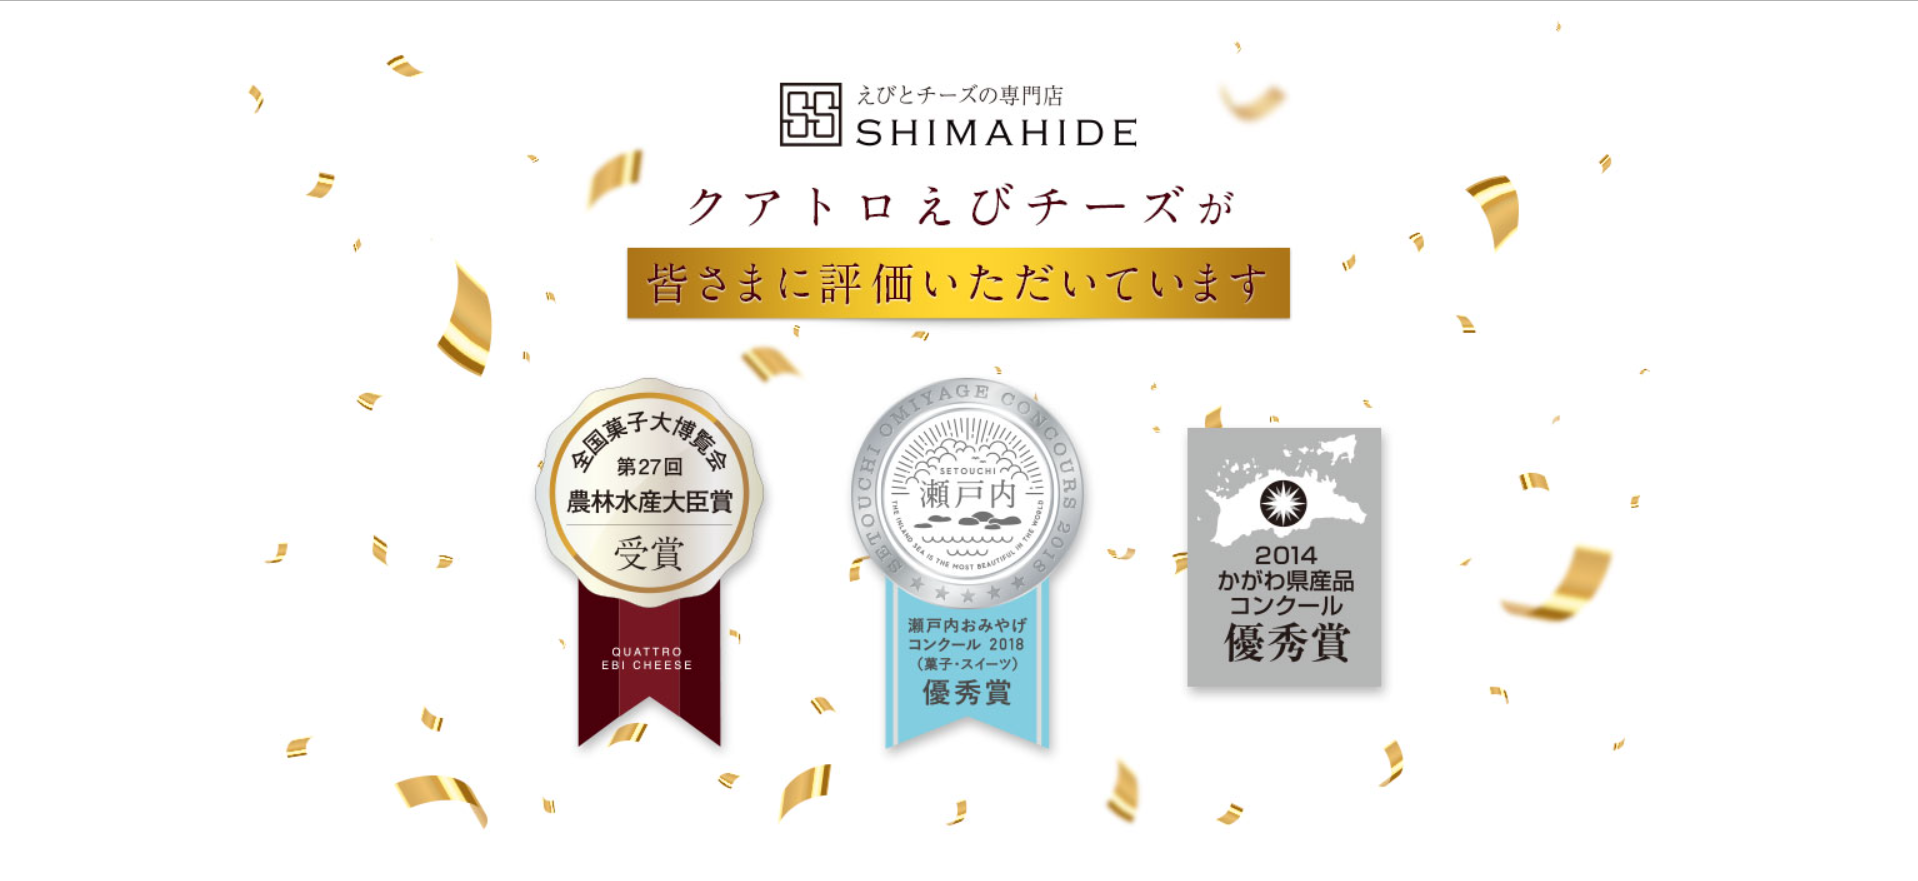 クアトロえびチーズ-えびとチーズの専門店SHIMAHIDE-4